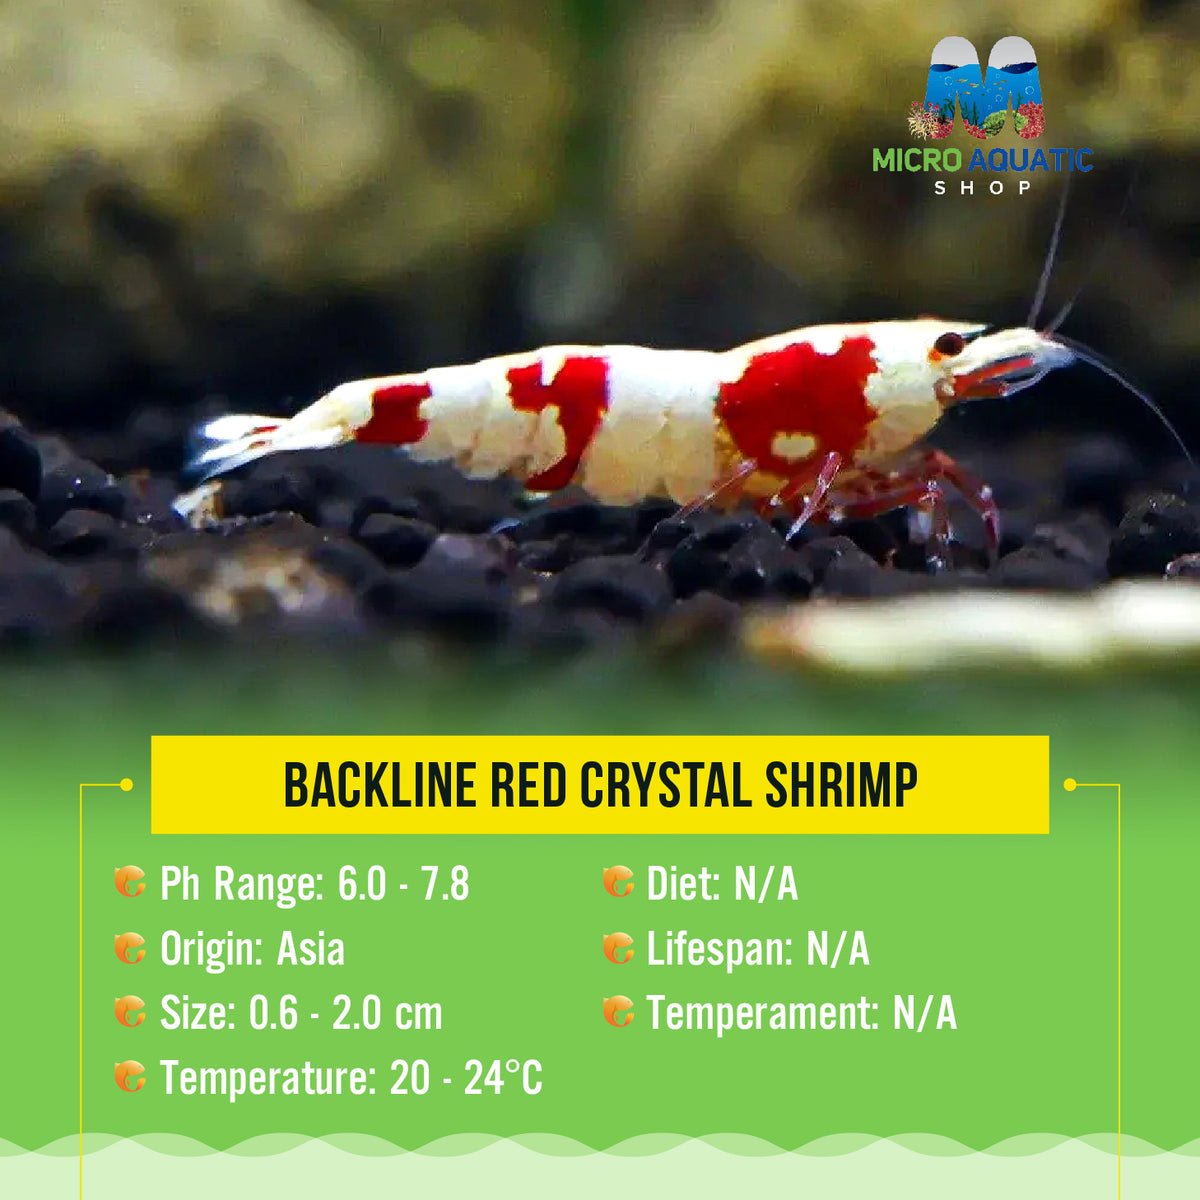 Buy 5 get 2 Backline Red Crystal Shrimp